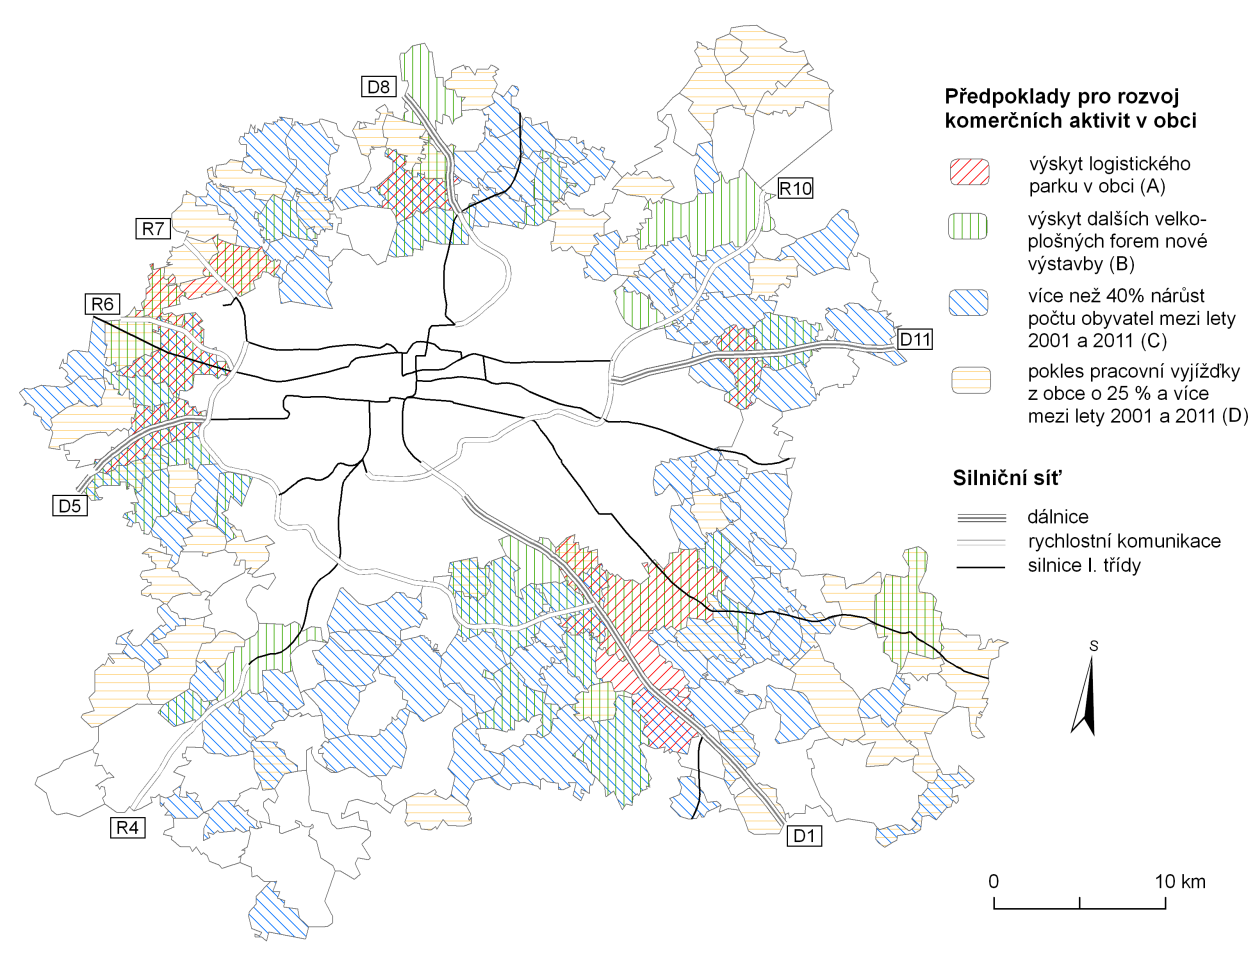 Pro zachycení vývoje a současného stavu rozložení komerčních aktivit v zázemí Prahy by bylo vhodné porovnat údaje z let 1991 a 2001 s rokem 2011.